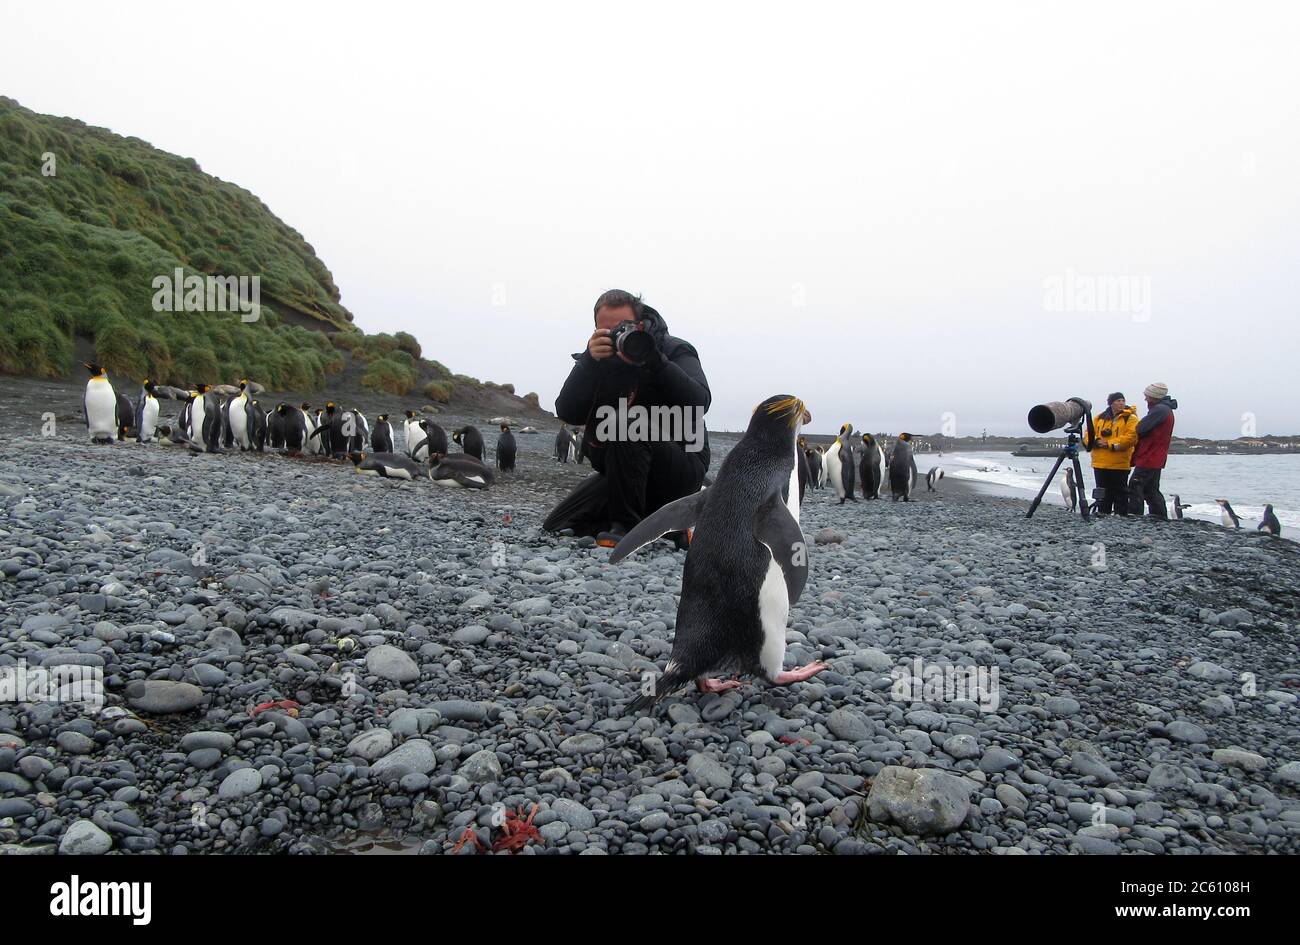 Photographe de la faune photographiant Royal Penguin (Eudyptes schlegeli) sur la plage de l'île Macquarie, Australie subantarctique. Banque D'Images